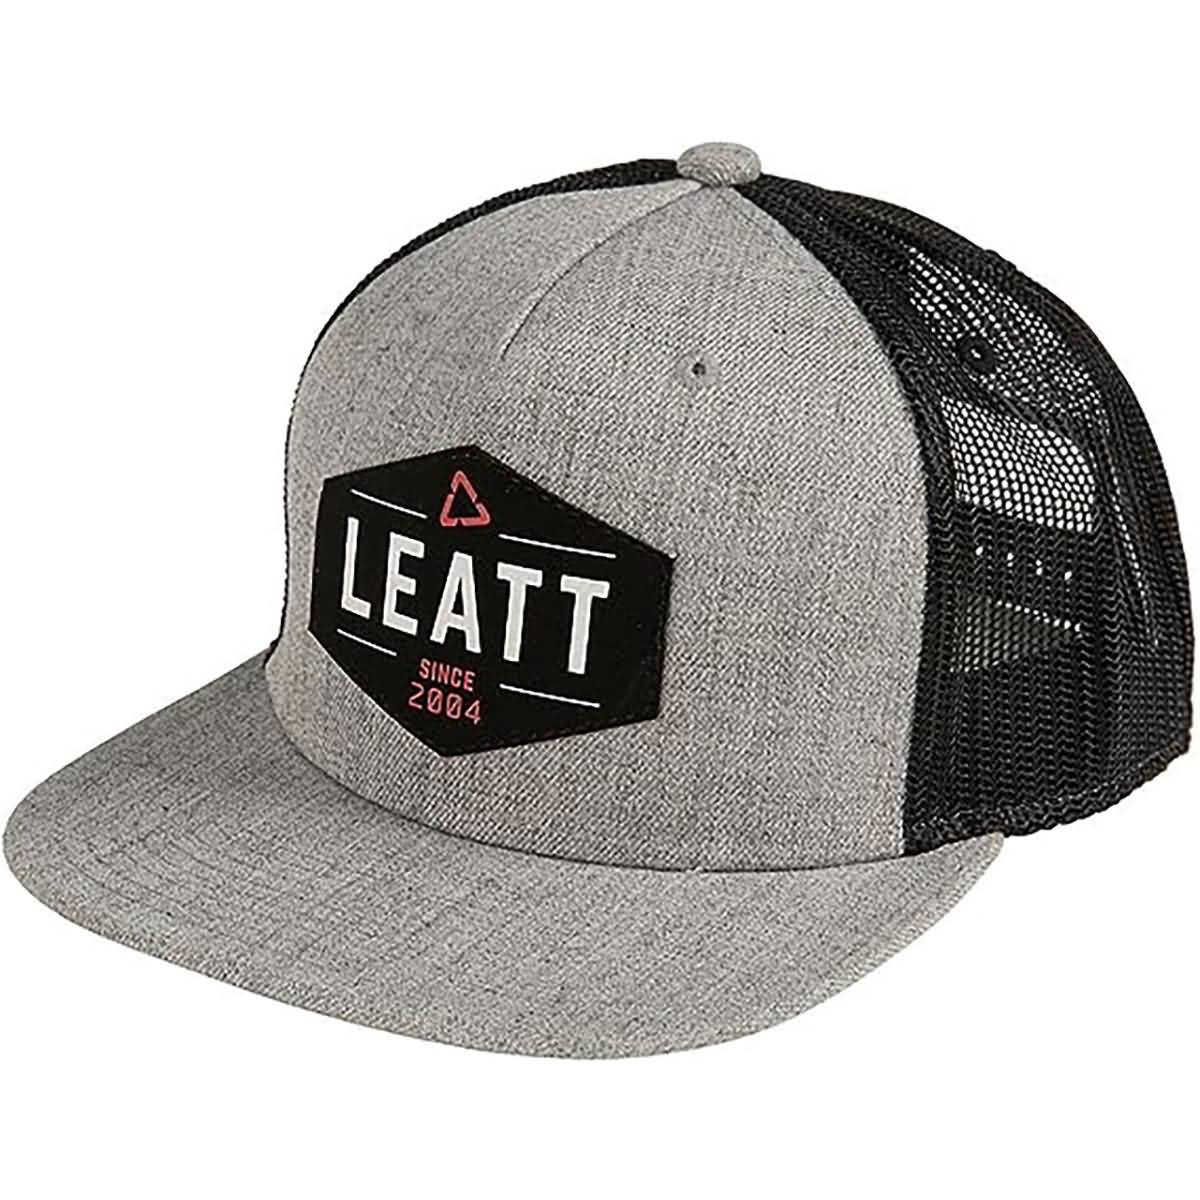 Leatt Since 2004 Men's Trucker Adjustable Hats